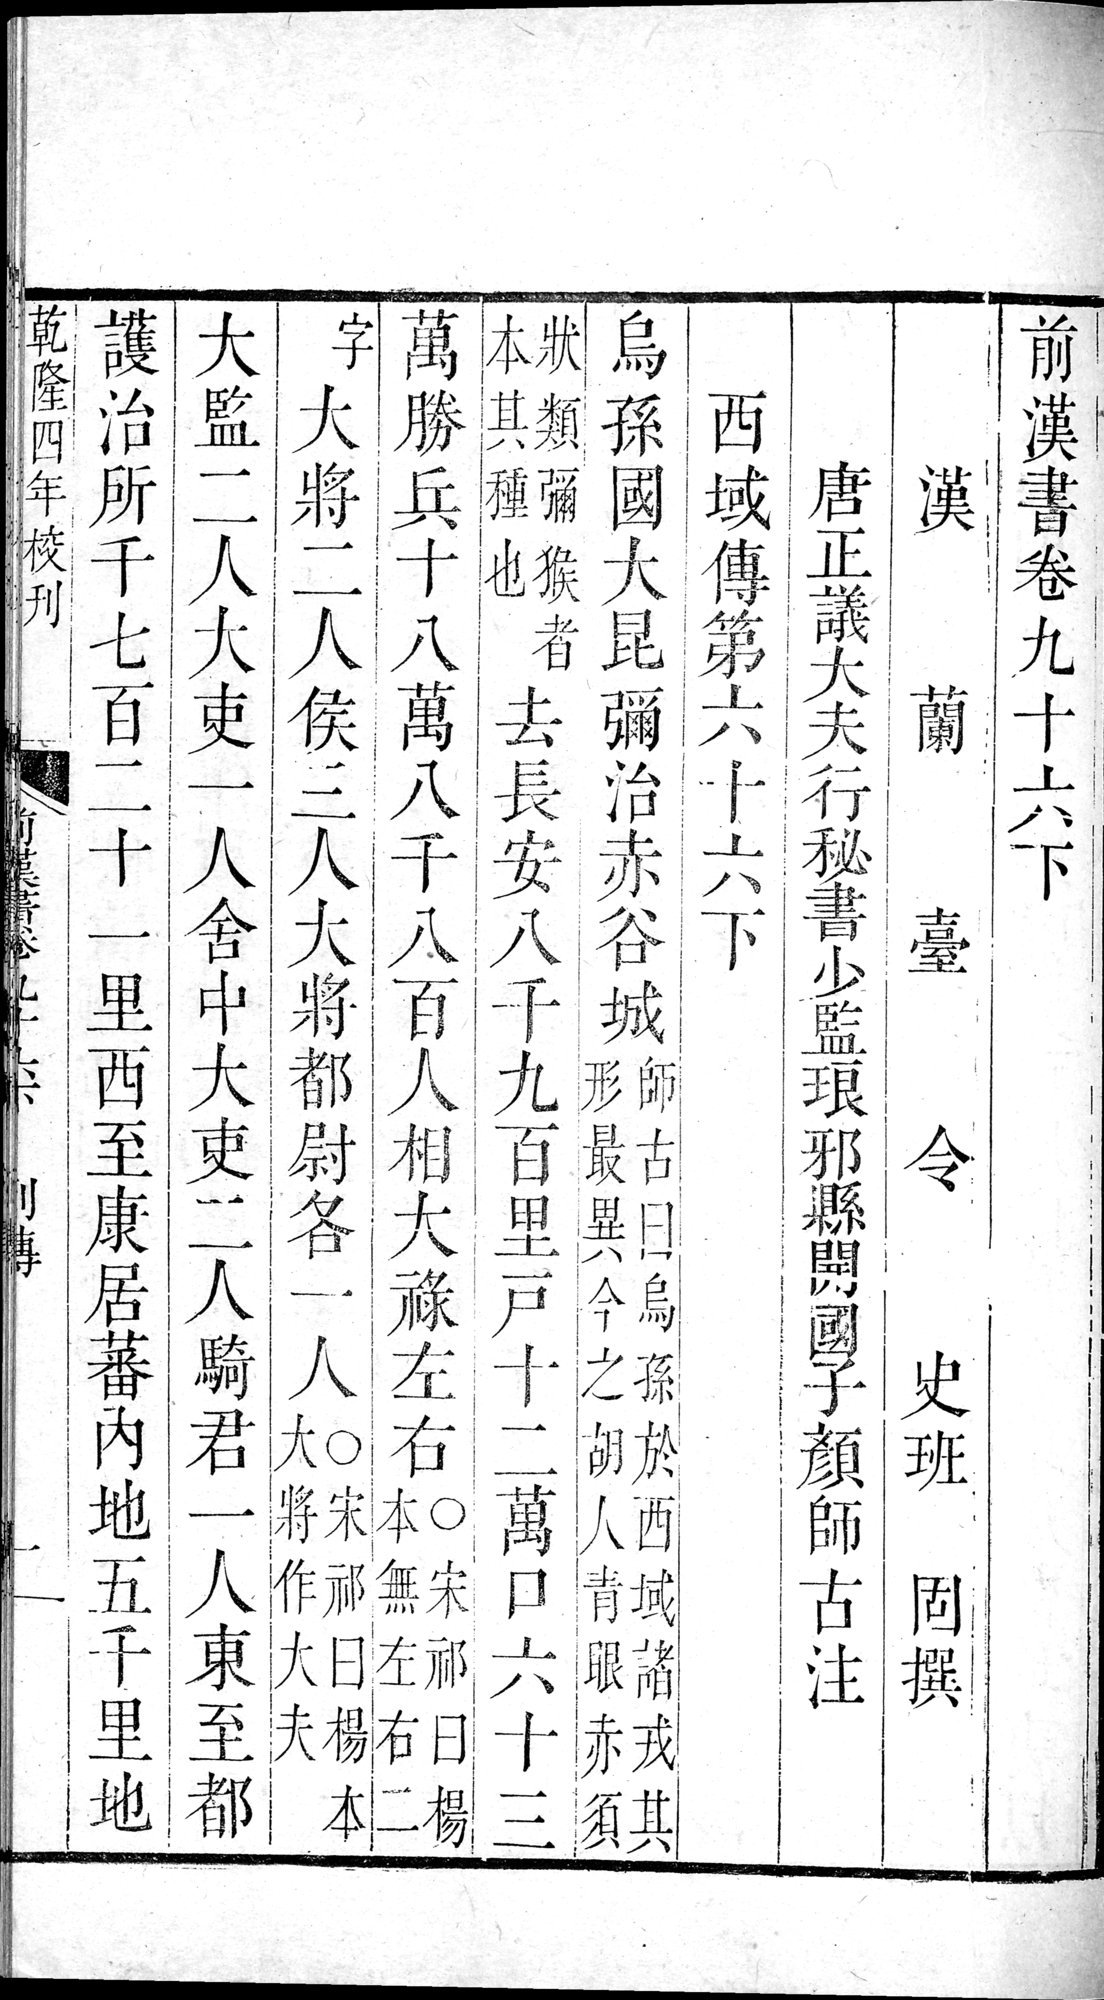 前漢書 巻96下 : vol.96 bottom / Page 1 (Grayscale High Resolution Image)